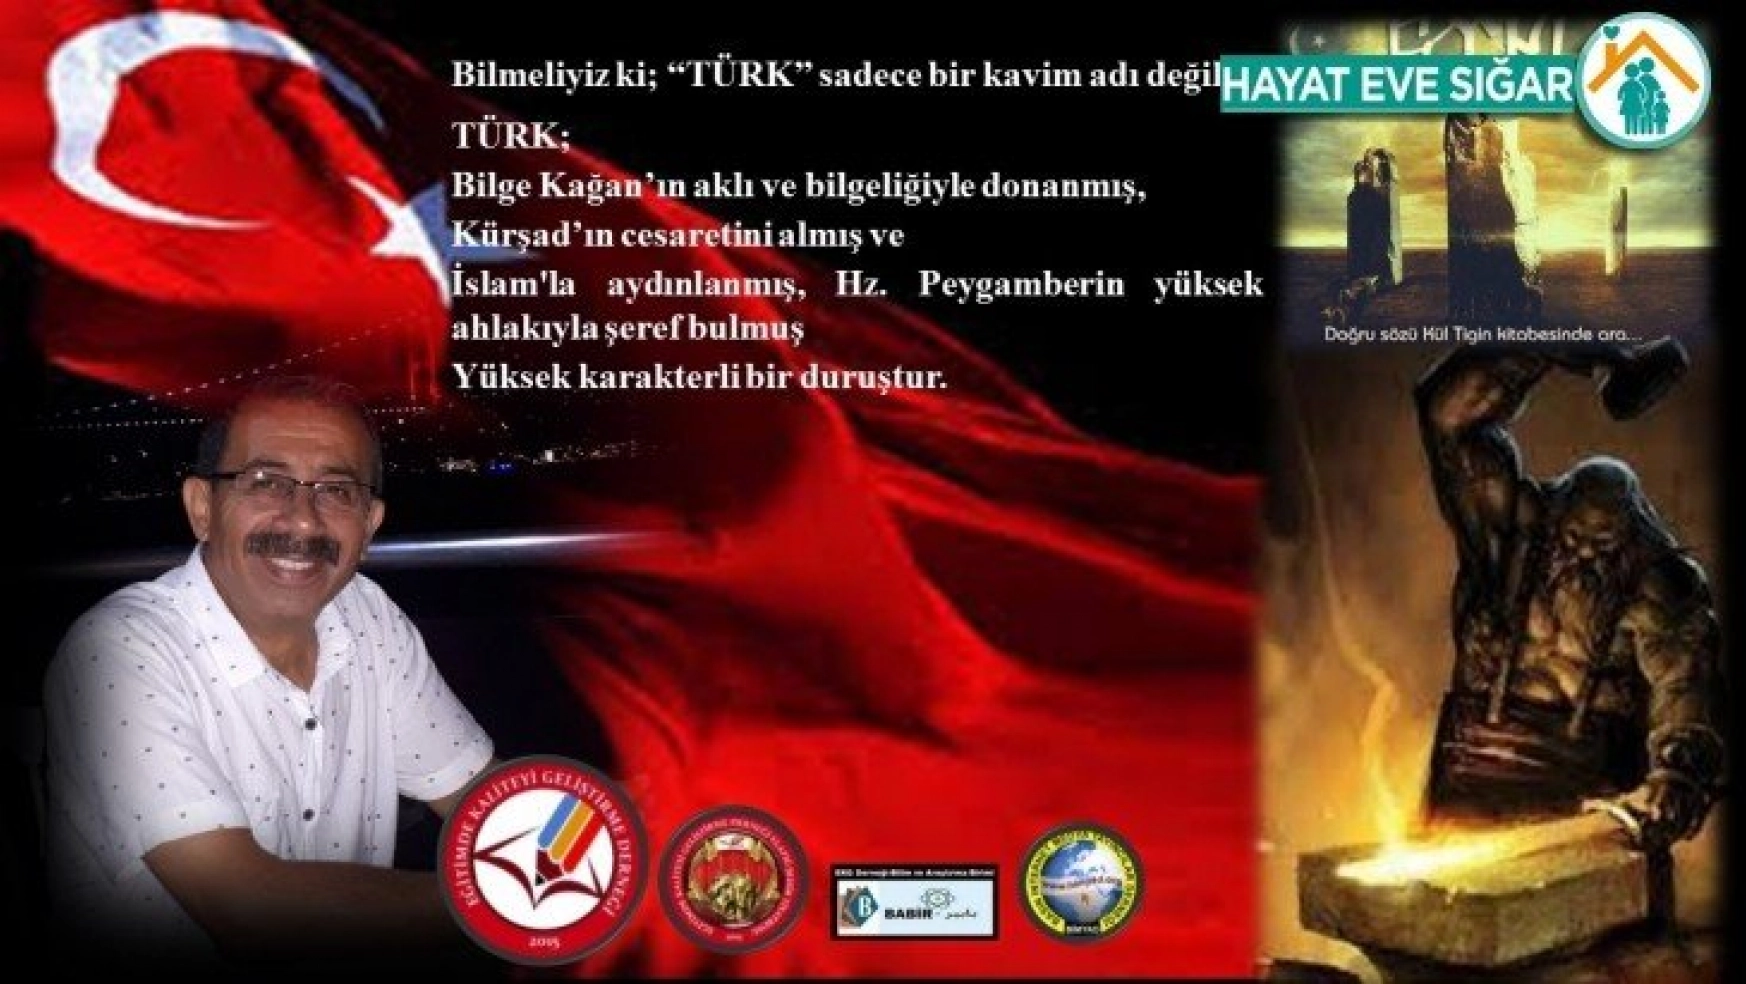 Başkanı Akgün'den 3 Mayıs Türkçülük Günü Mesajı